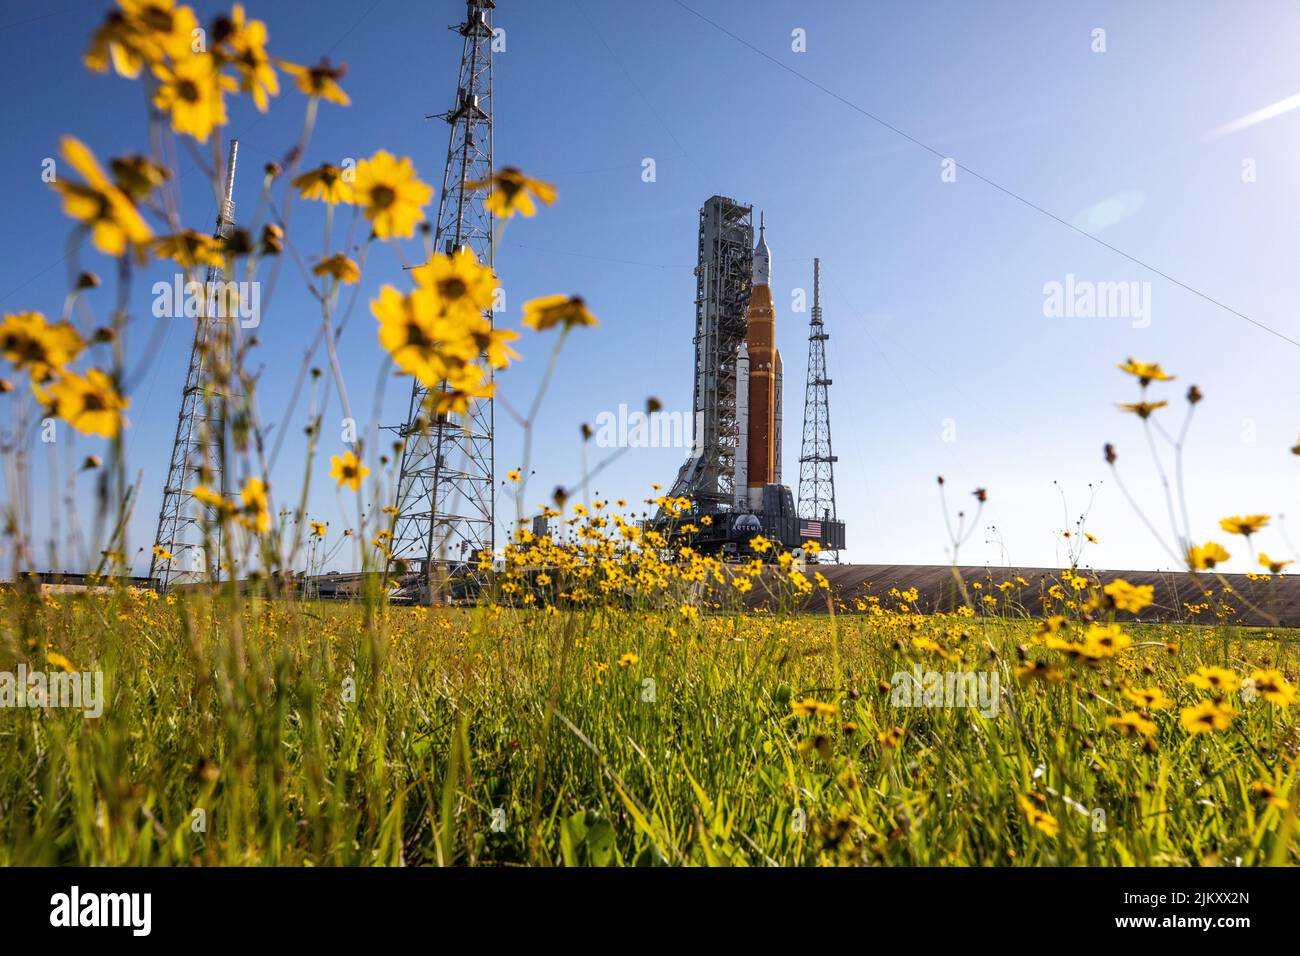 22 juin 2022 - Floride, États-Unis - avec des fleurs sauvages entourant la vue, la fusée Lune du système de lancement spatial (SLS) de la NASA, portée au-dessus du transporteur à chenilles 2, arrive à l'aire de lancement 39B au Kennedy Space Center de l'agence, en Floride, sur 6 juin 2022. Le premier d'une série de missions de plus en plus complexe, Artemis I va tester la fusée SLS et l'engin spatial Orion comme un système intégré avant les vols à bord de la Lune. Grâce à Artemis, la NASA atterrira la première femme et la première personne de couleur sur la surface lunaire, ouvrant la voie à une présence lunaire à long terme et utilisant la Lune comme steppingstone b Banque D'Images